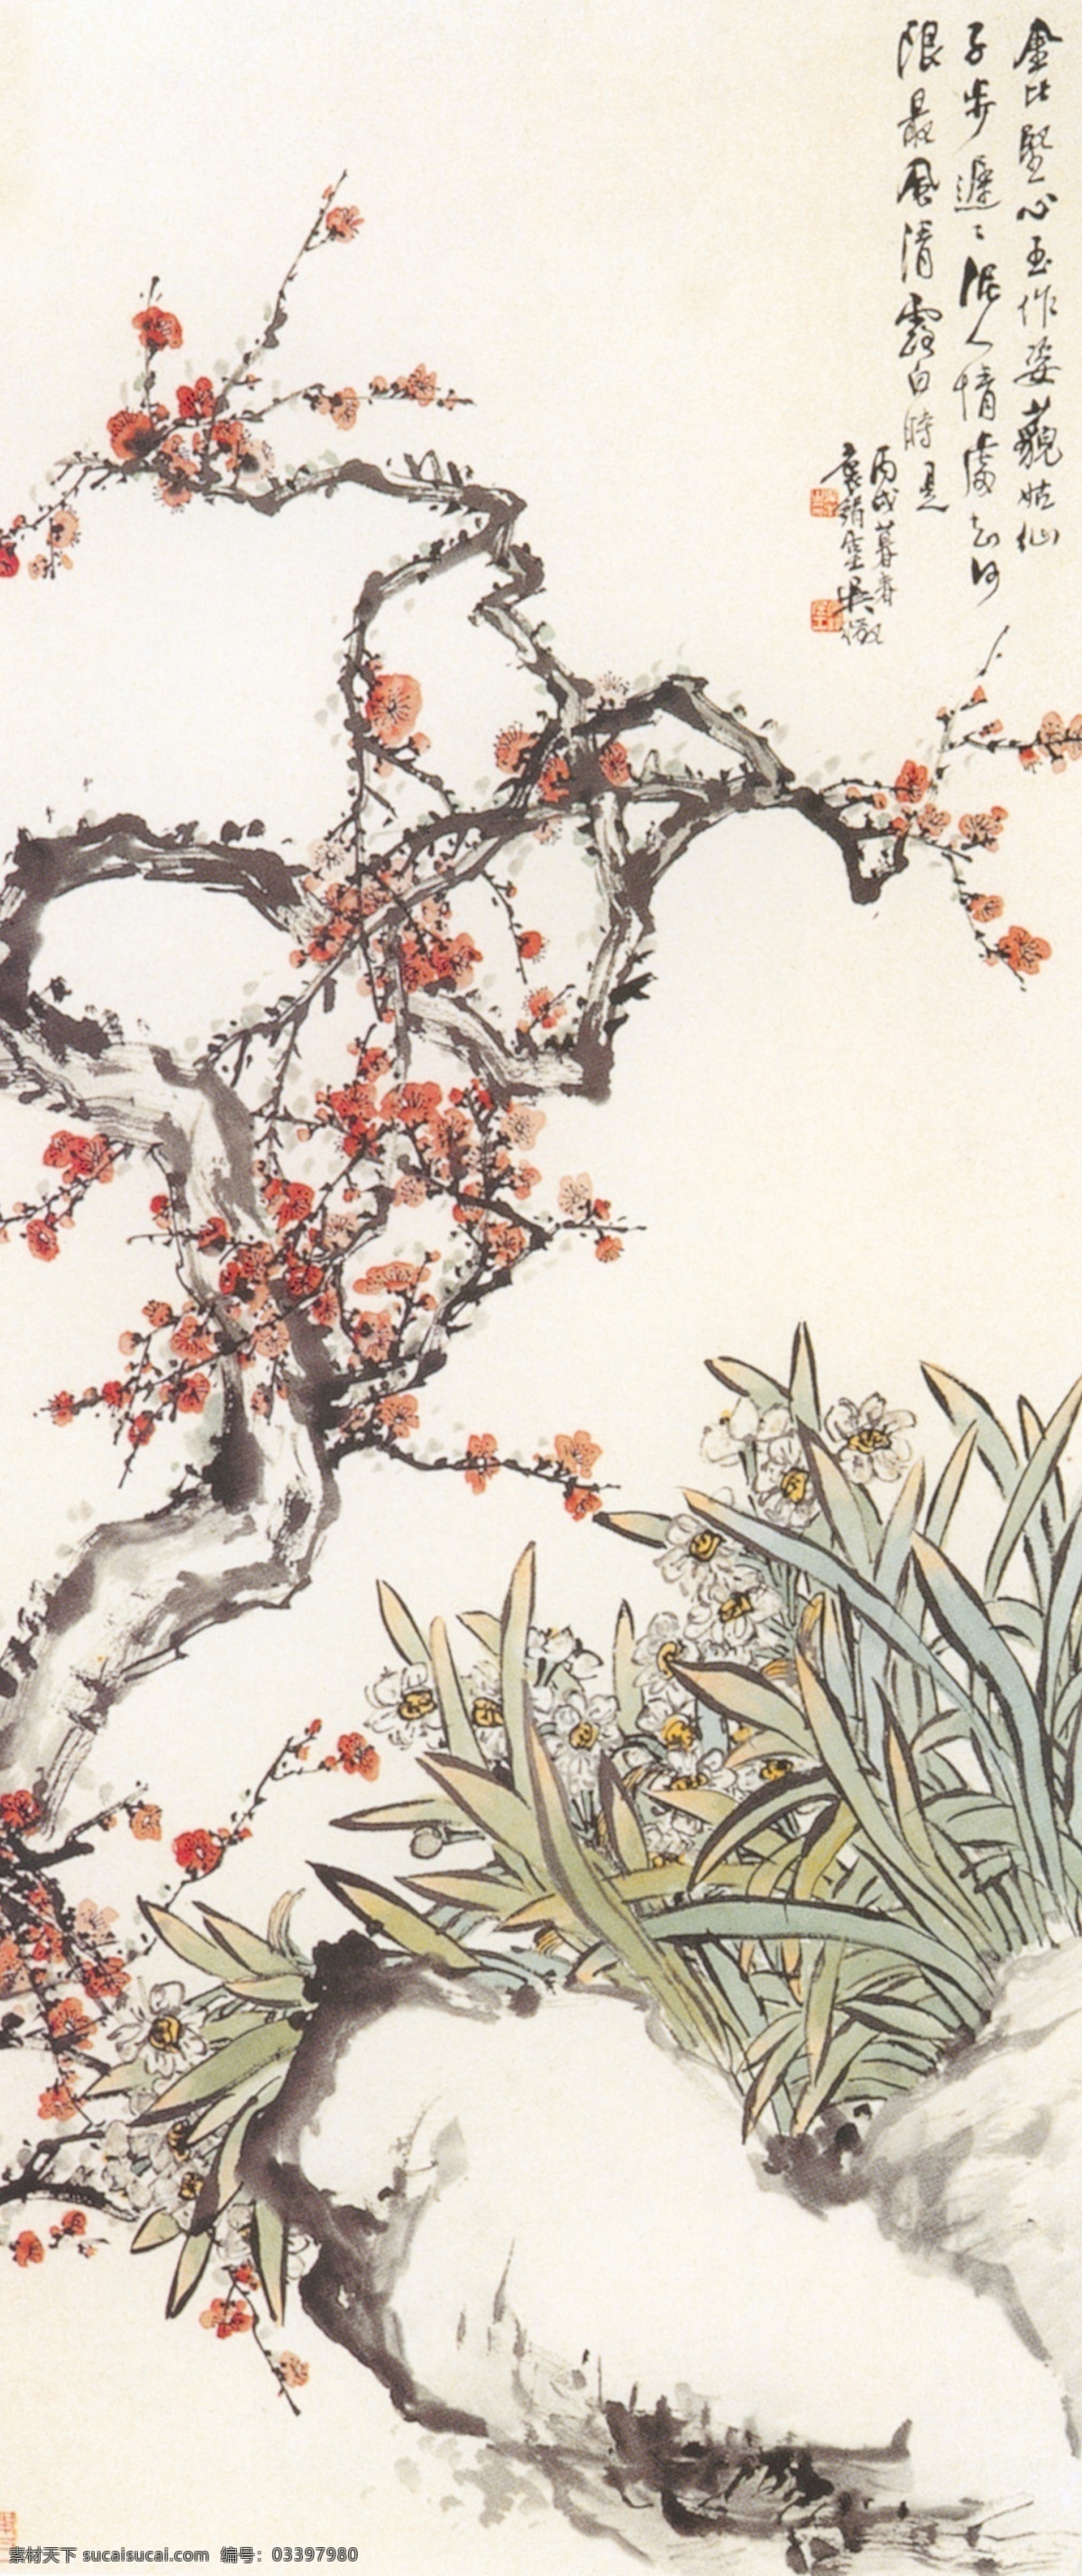 梅花水仙 梅花 水仙 水墨 假山 树干 中国现代花鸟 文化艺术 绘画书法